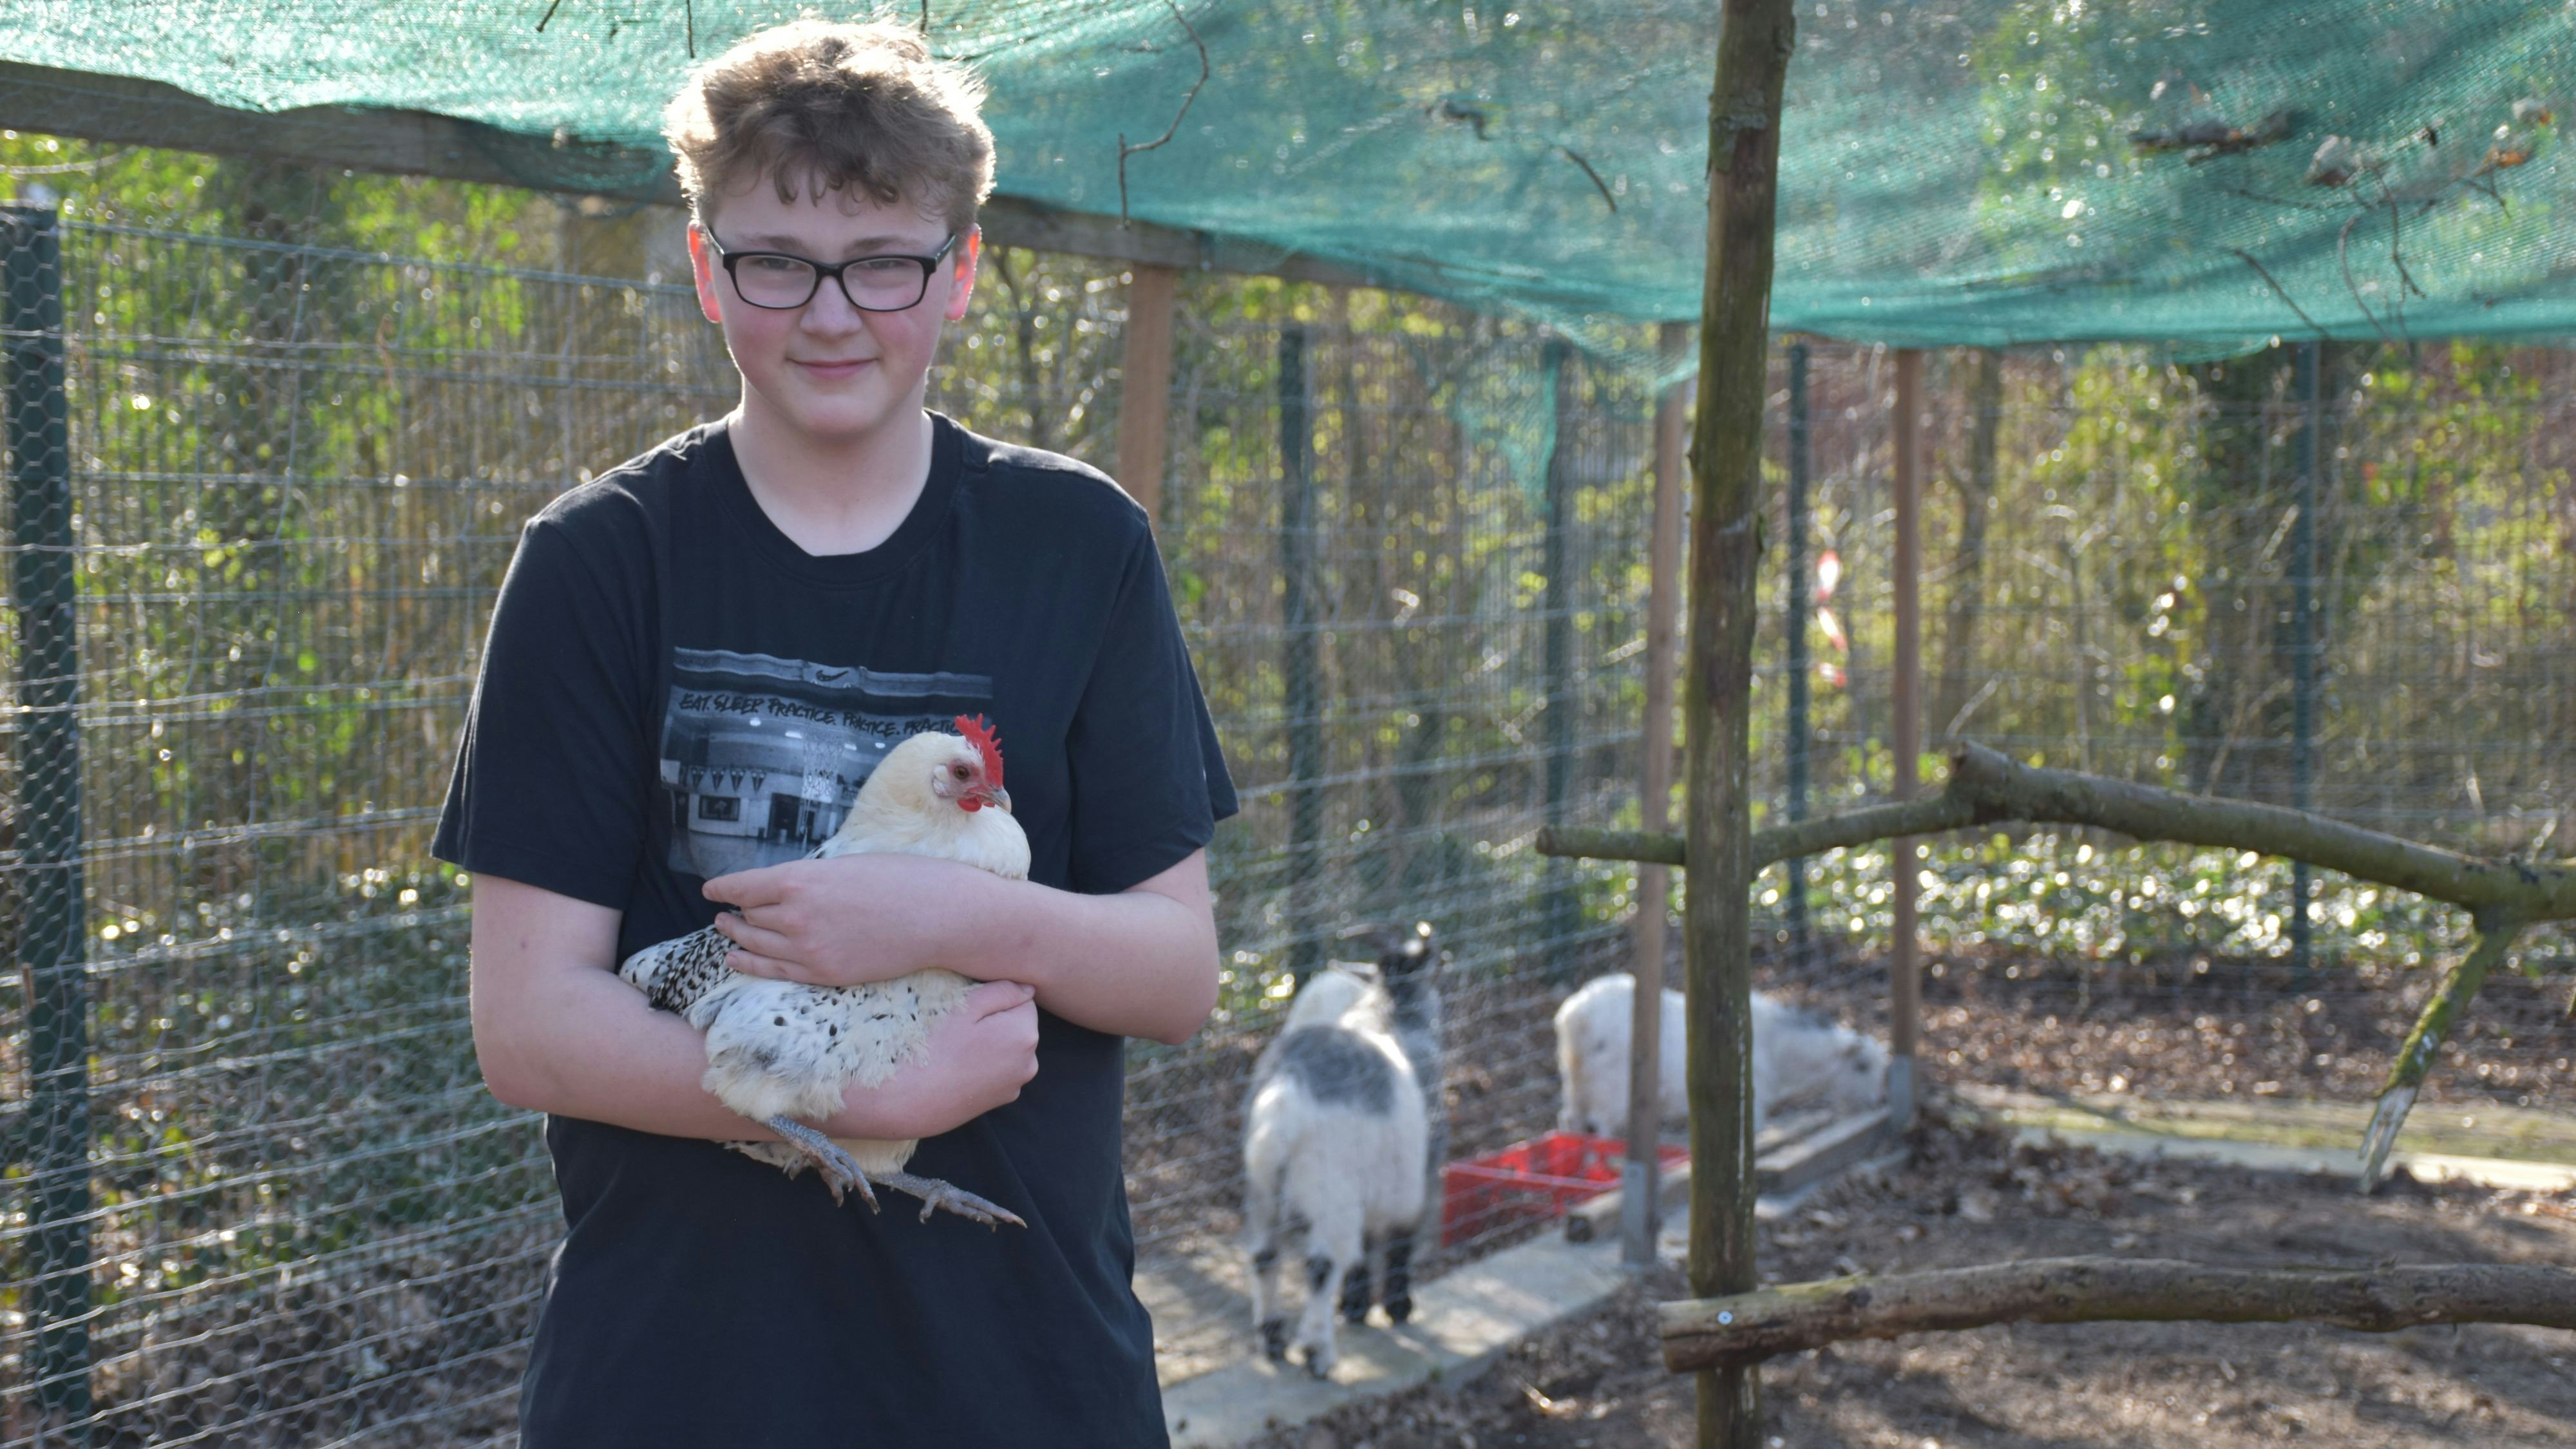 Ihm macht die Arbeit im Tiergarten Spaß: Jayden Hülsmann versorgt unter anderem 13 Hühner und einen Hahn. Foto: Böckmann